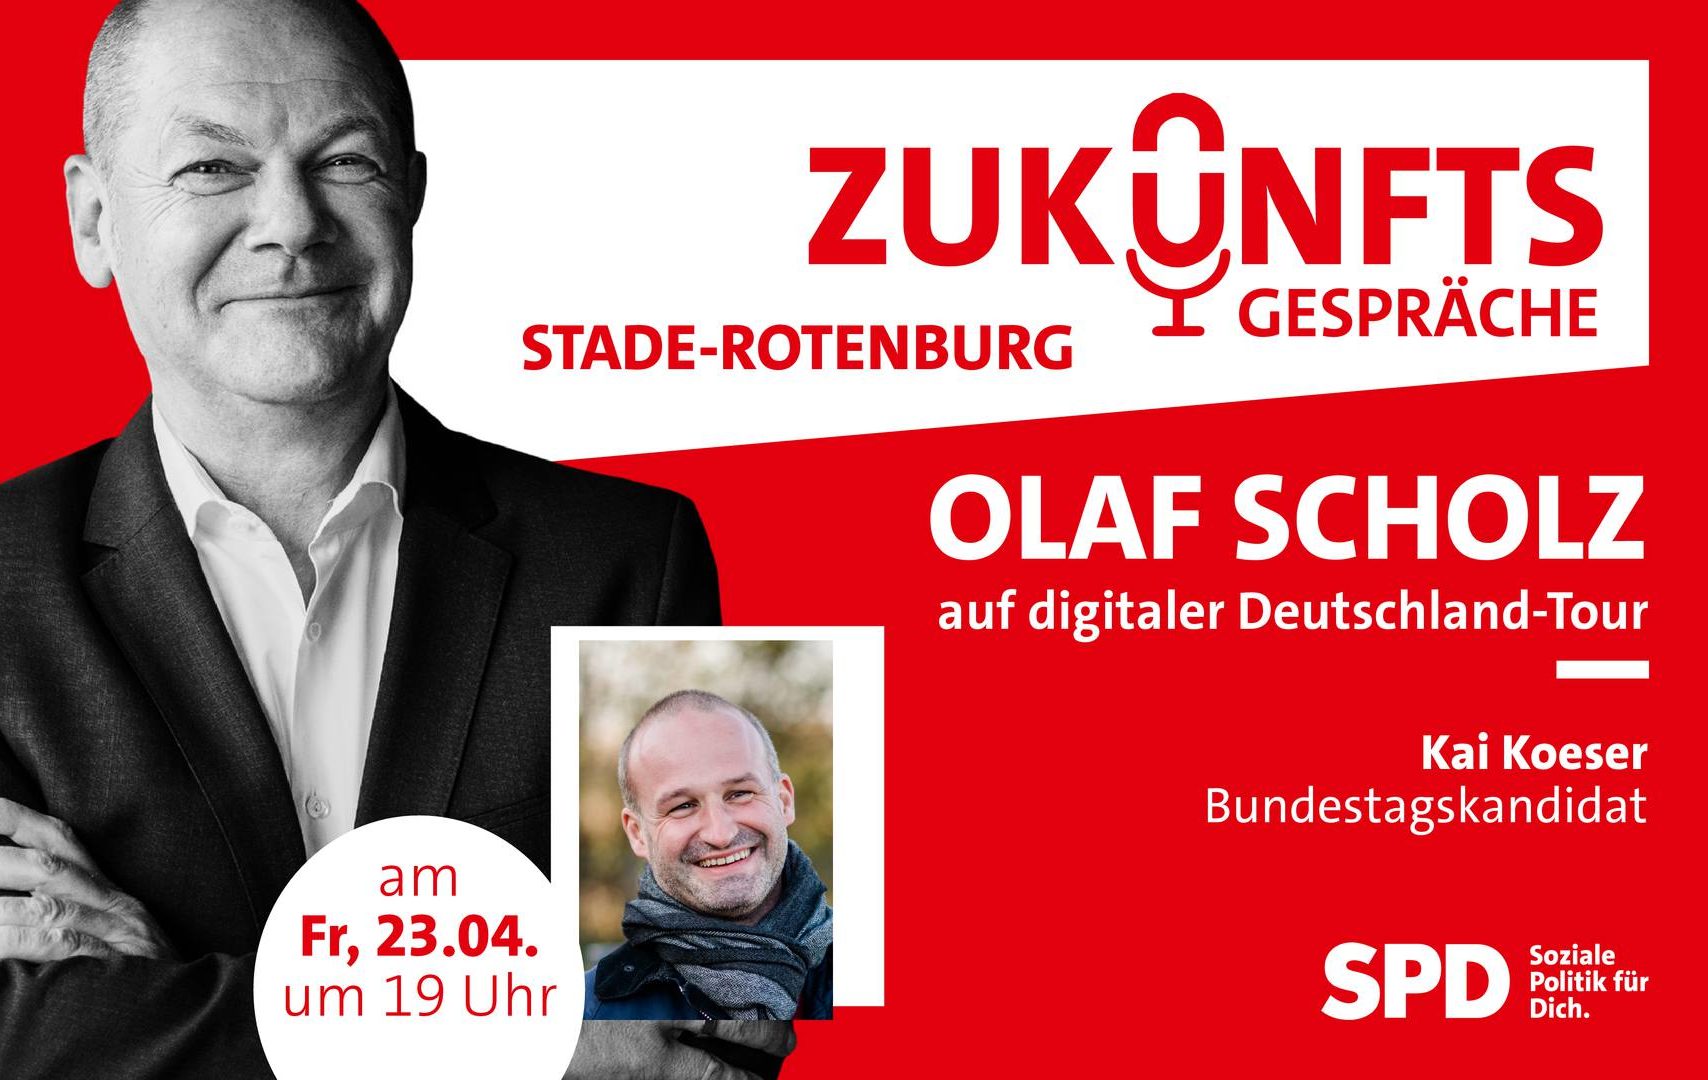 Portrait von Olaf Scholz und Kai Koeser zur Bewerbung der Zukunftsgespräche